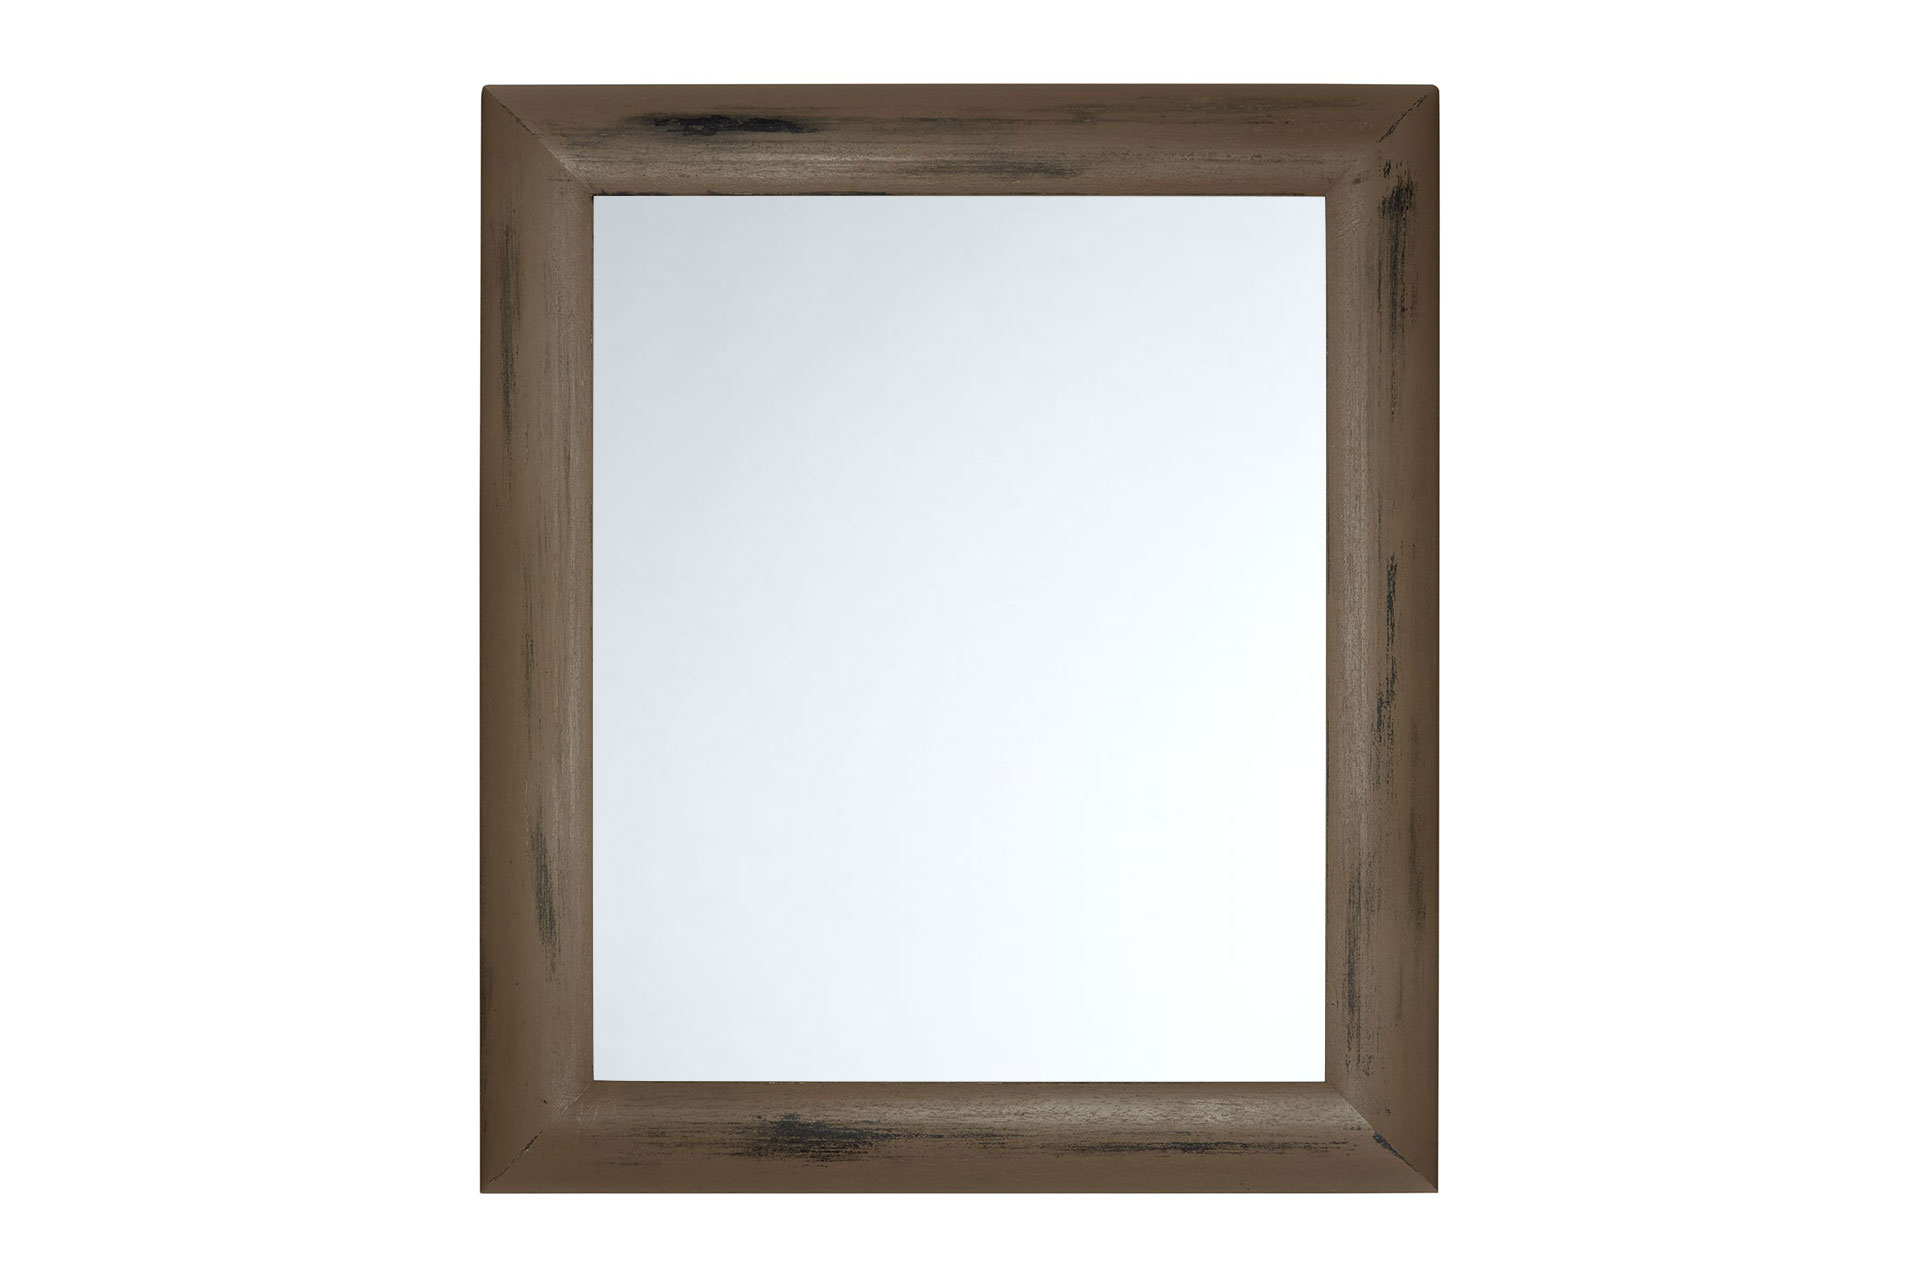 Wandspiegel Modell Bandol, Spiegel: glatt, Shabby-Chic Style, Design/Farbe: schwarz, blassbraun, Raum: Flur, Innenbereich, Schlafzimmer, Wohnzimmer, Frontansicht Rahmen mit Spiegel